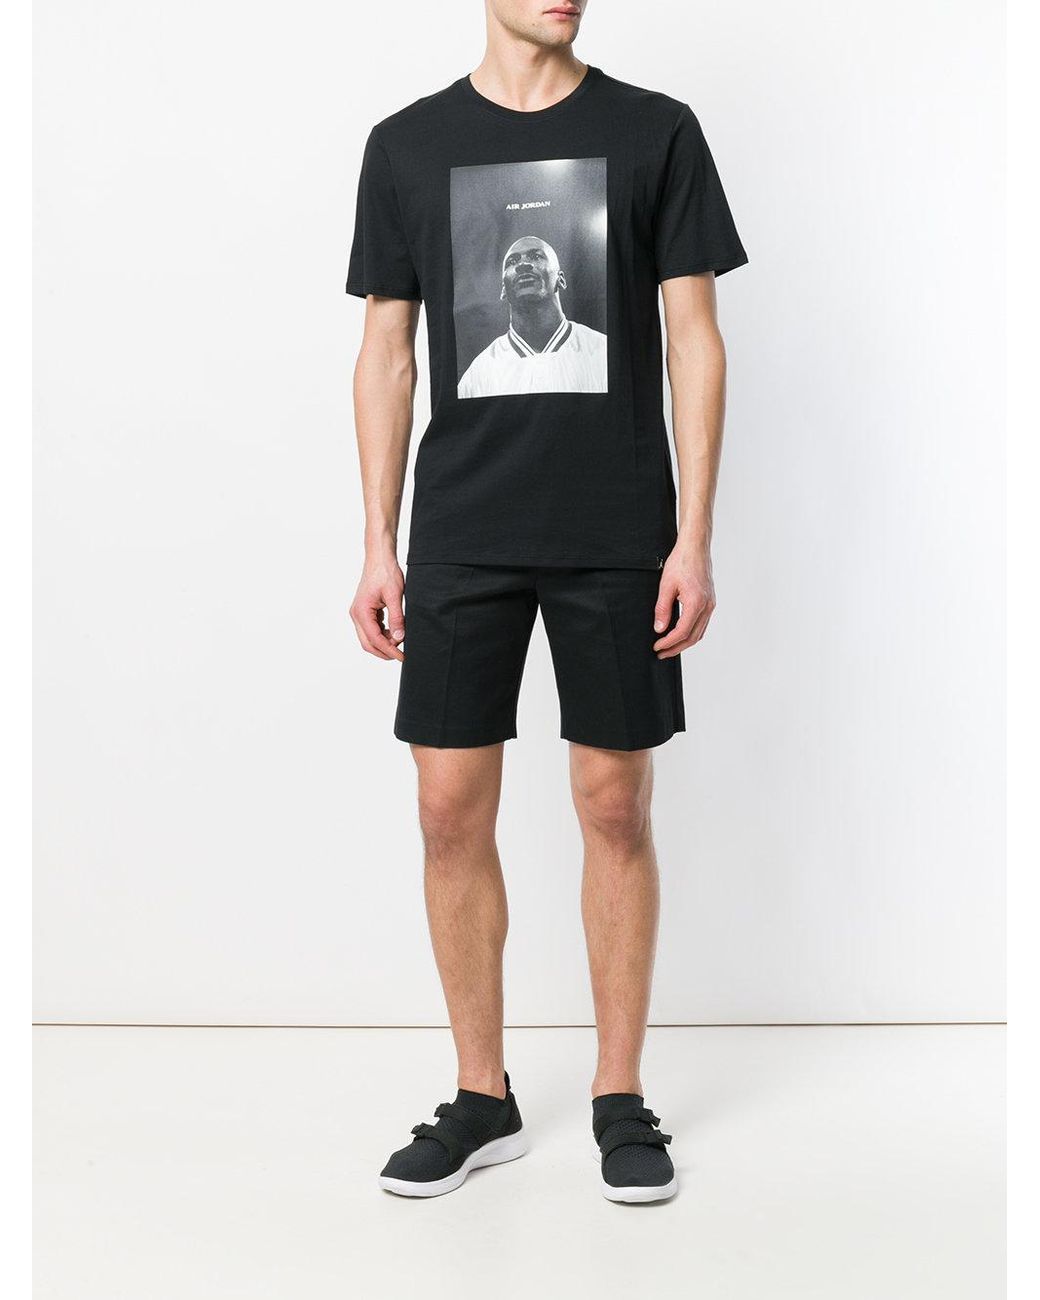 Nike Air Jordan Photo Print T-shirt in Black for Men | Lyst